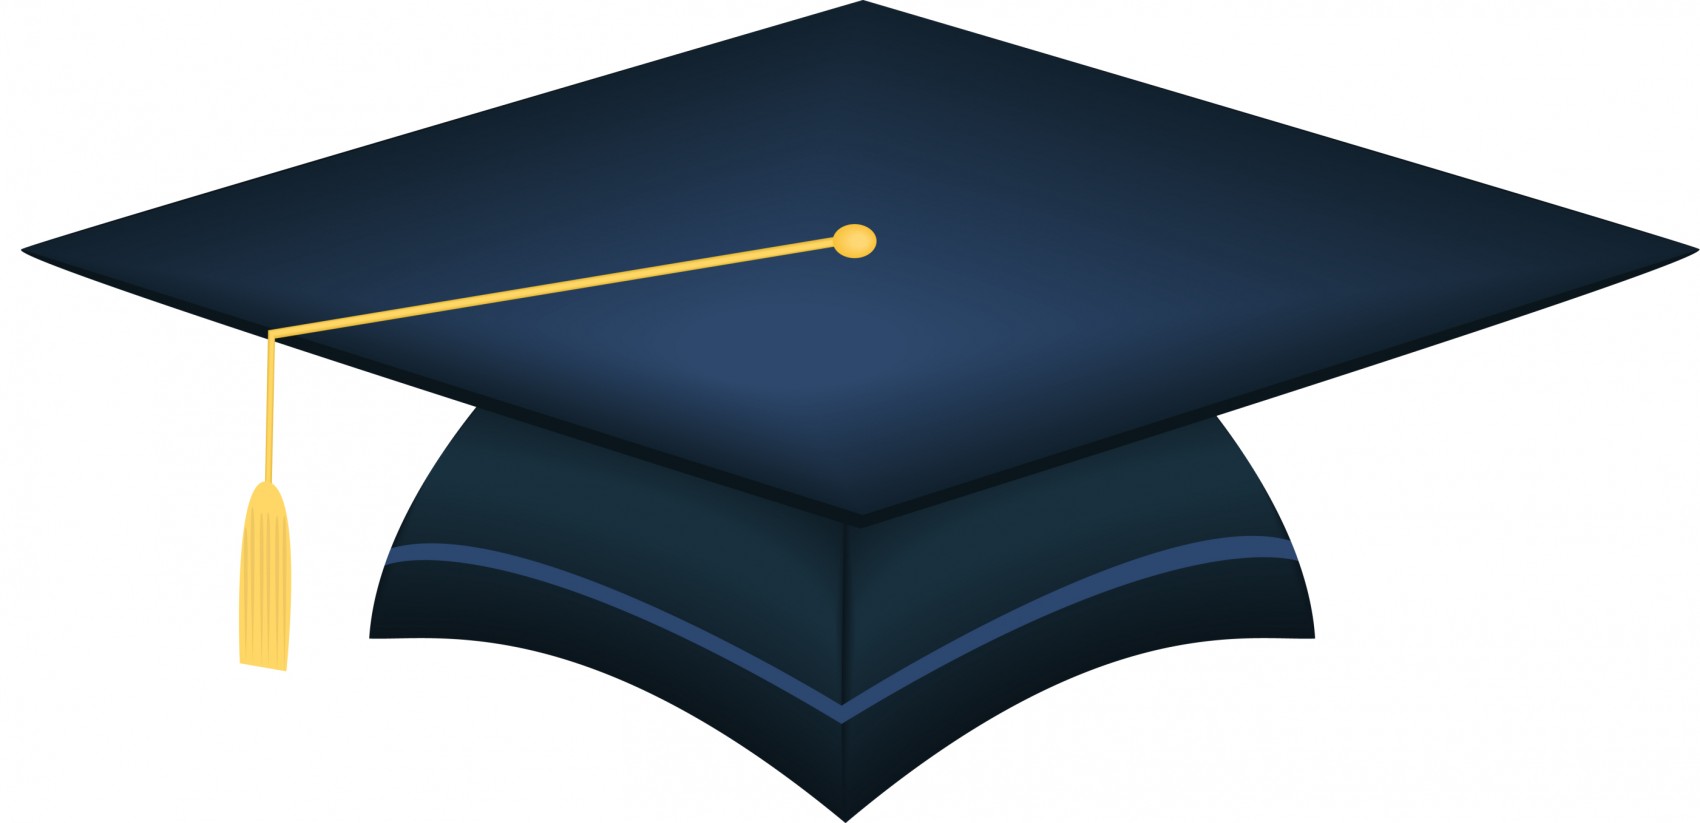 Clipart of graduation cap